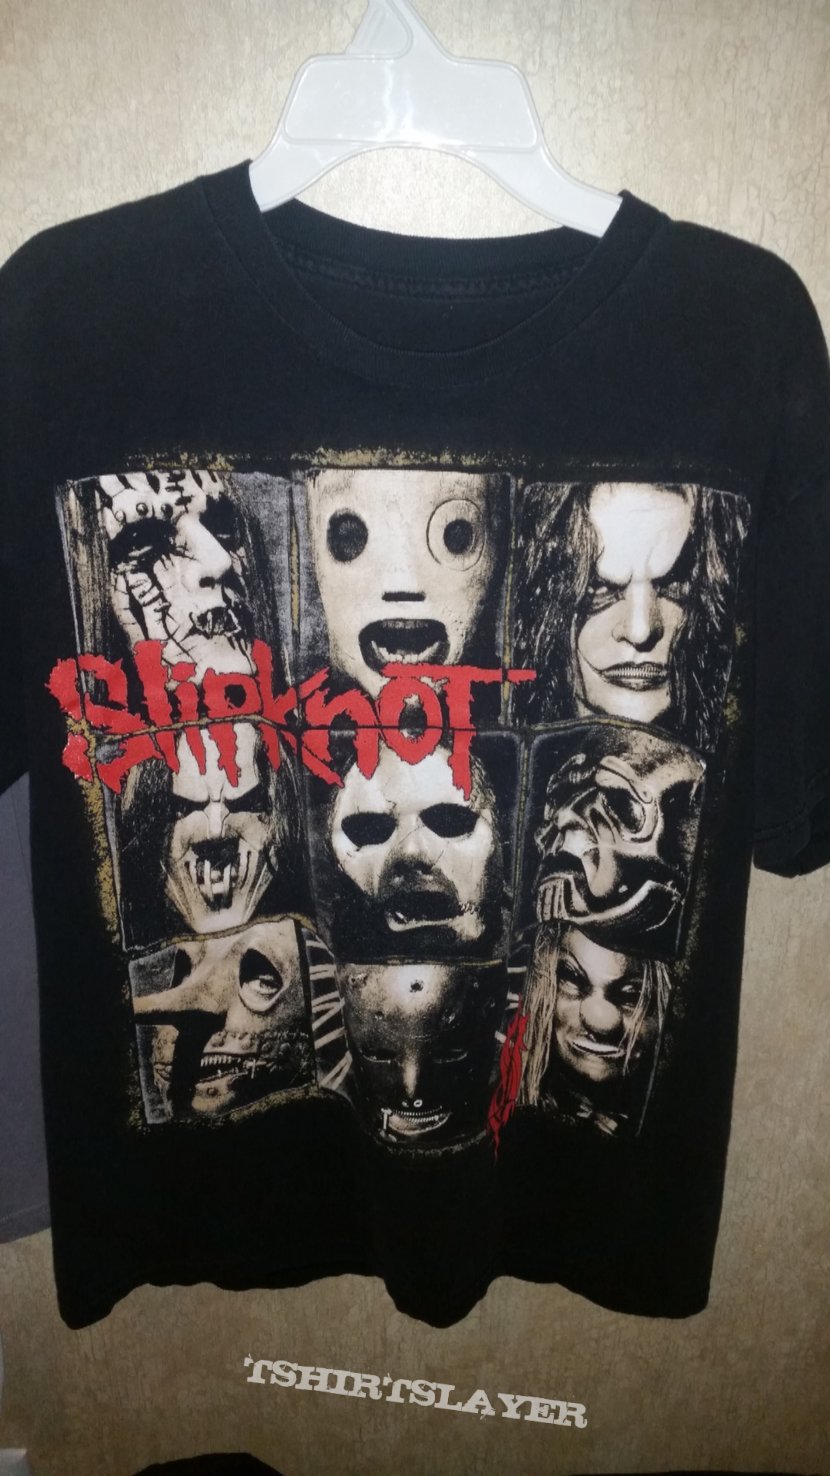 Slipknot All hope is gone masks shirt